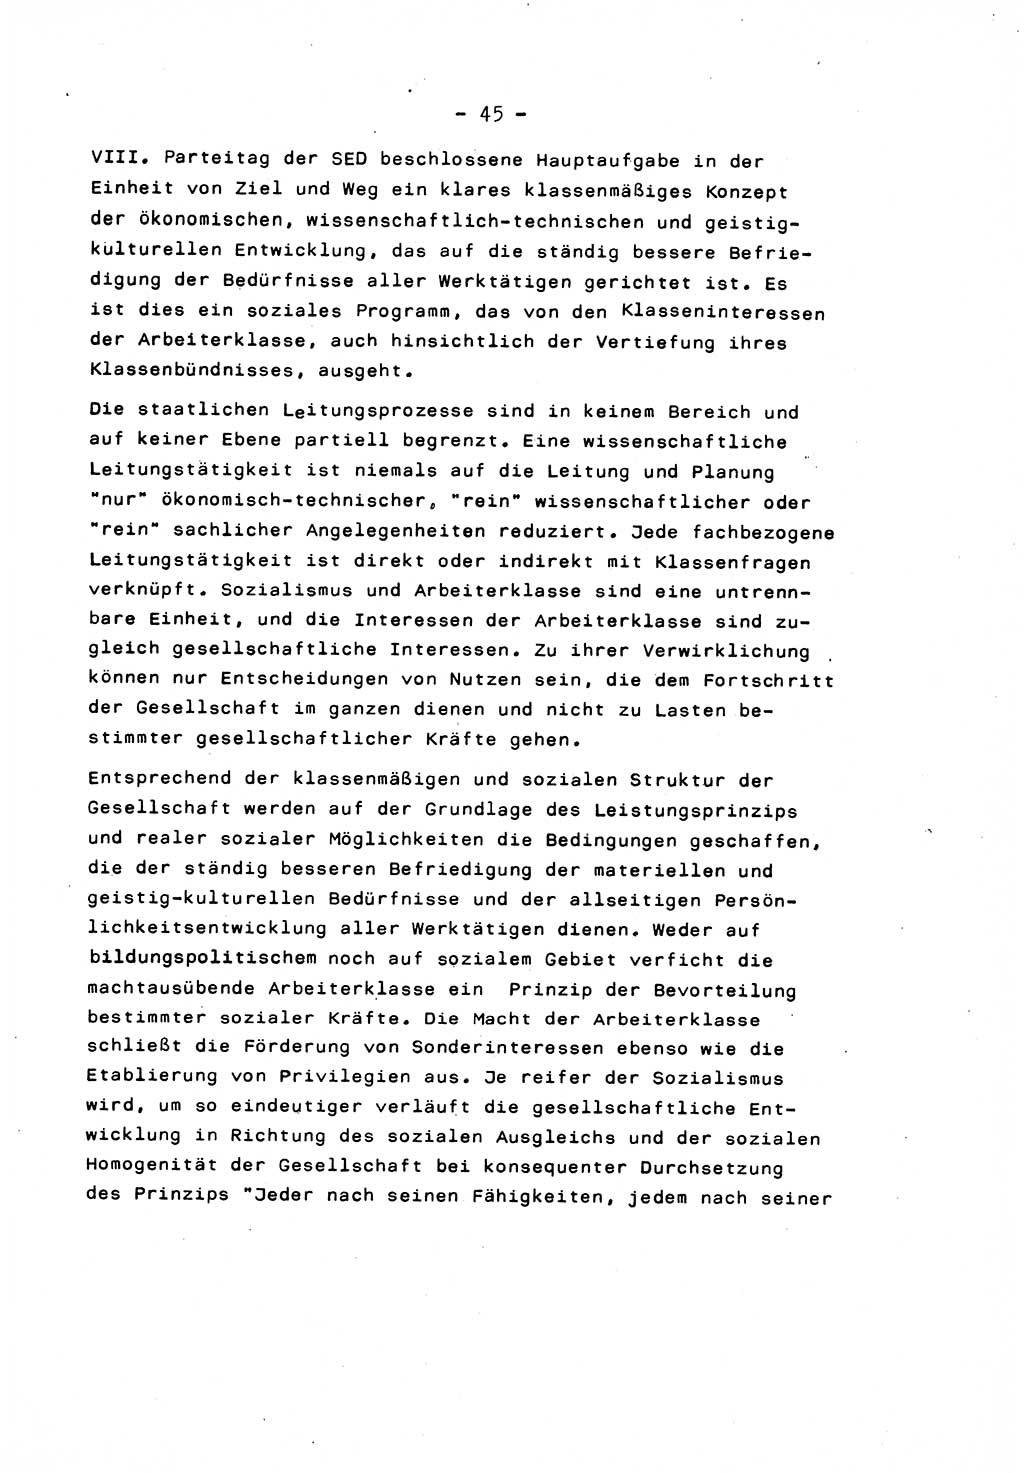 Marxistisch-leninistische Staats- und Rechtstheorie [Deutsche Demokratische Republik (DDR)] 1975, Seite 45 (ML St.-R.-Th. DDR 1975, S. 45)